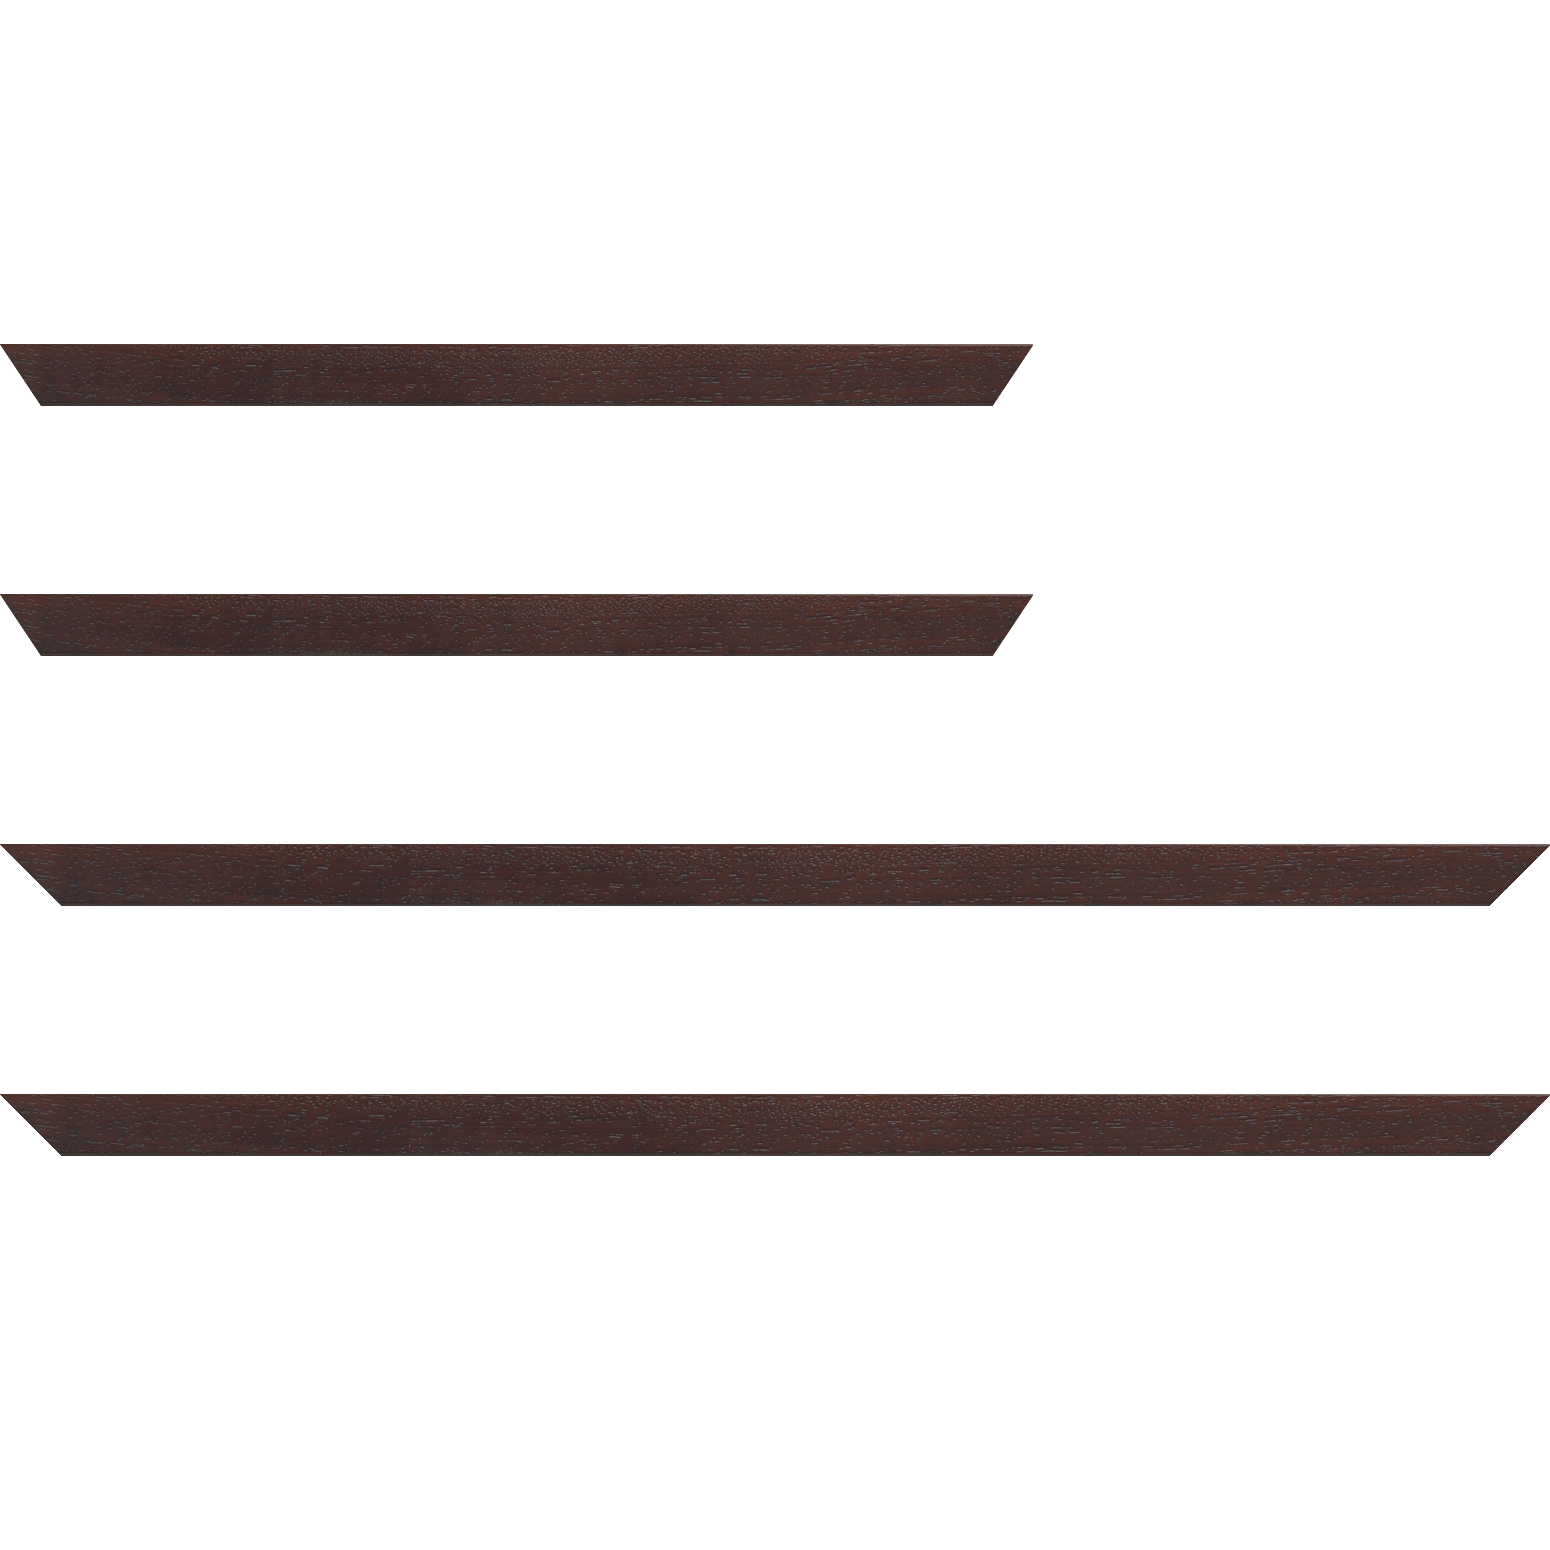 Baguette bois profil plat largeur 2cm hauteur 3.3cm marron foncé satiné (aussi appelé cache clou)